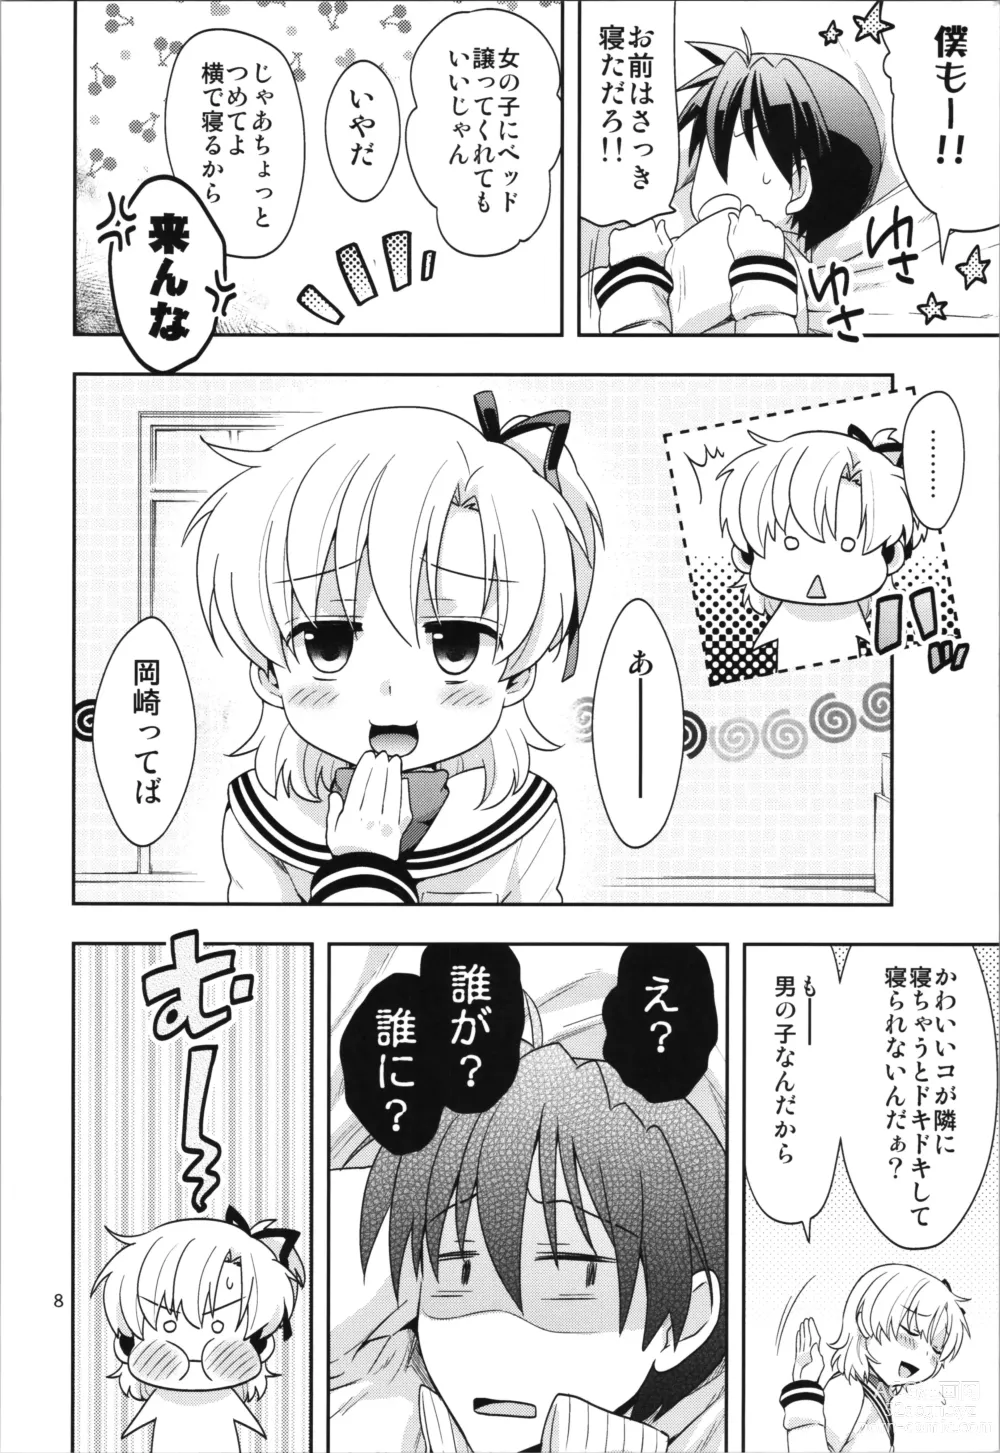 Page 8 of doujinshi Ura Haruhara Mania